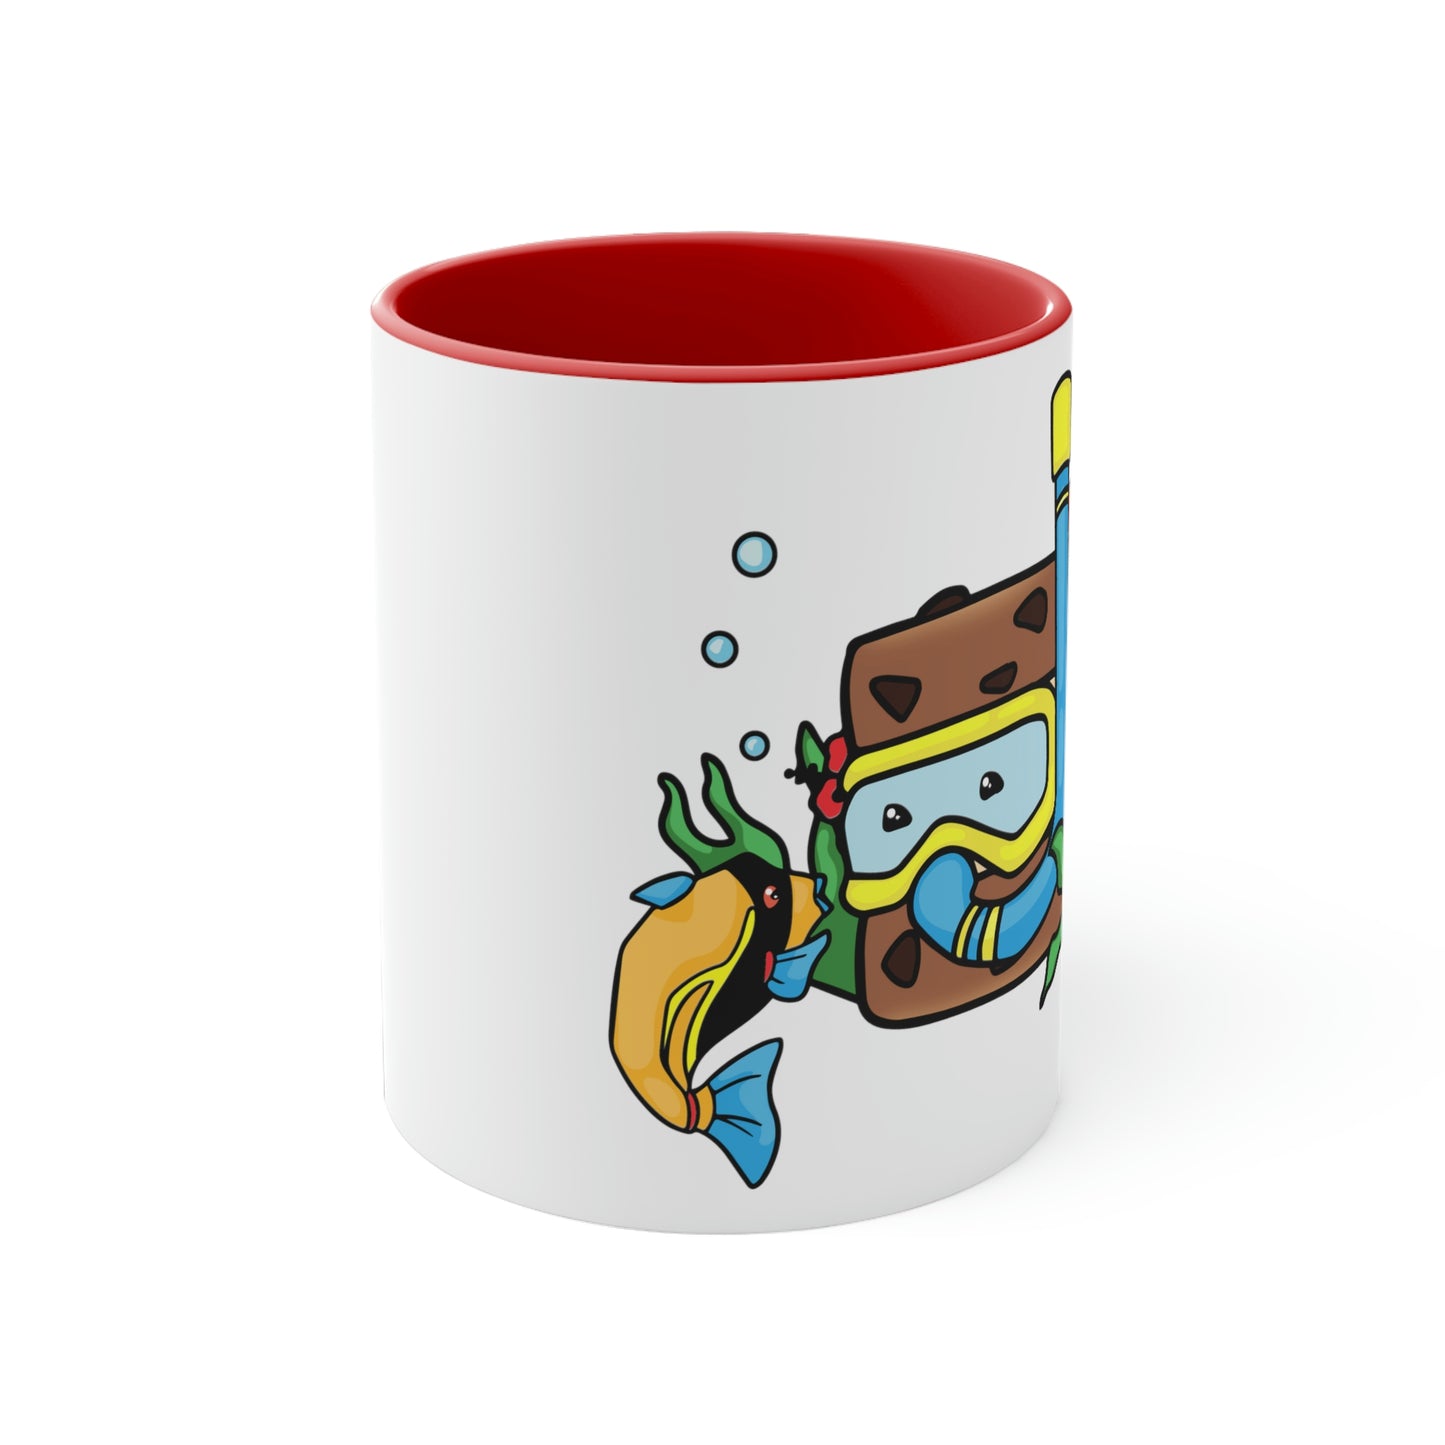 Snorkin' Sammie Coffee Mug, 11 oz